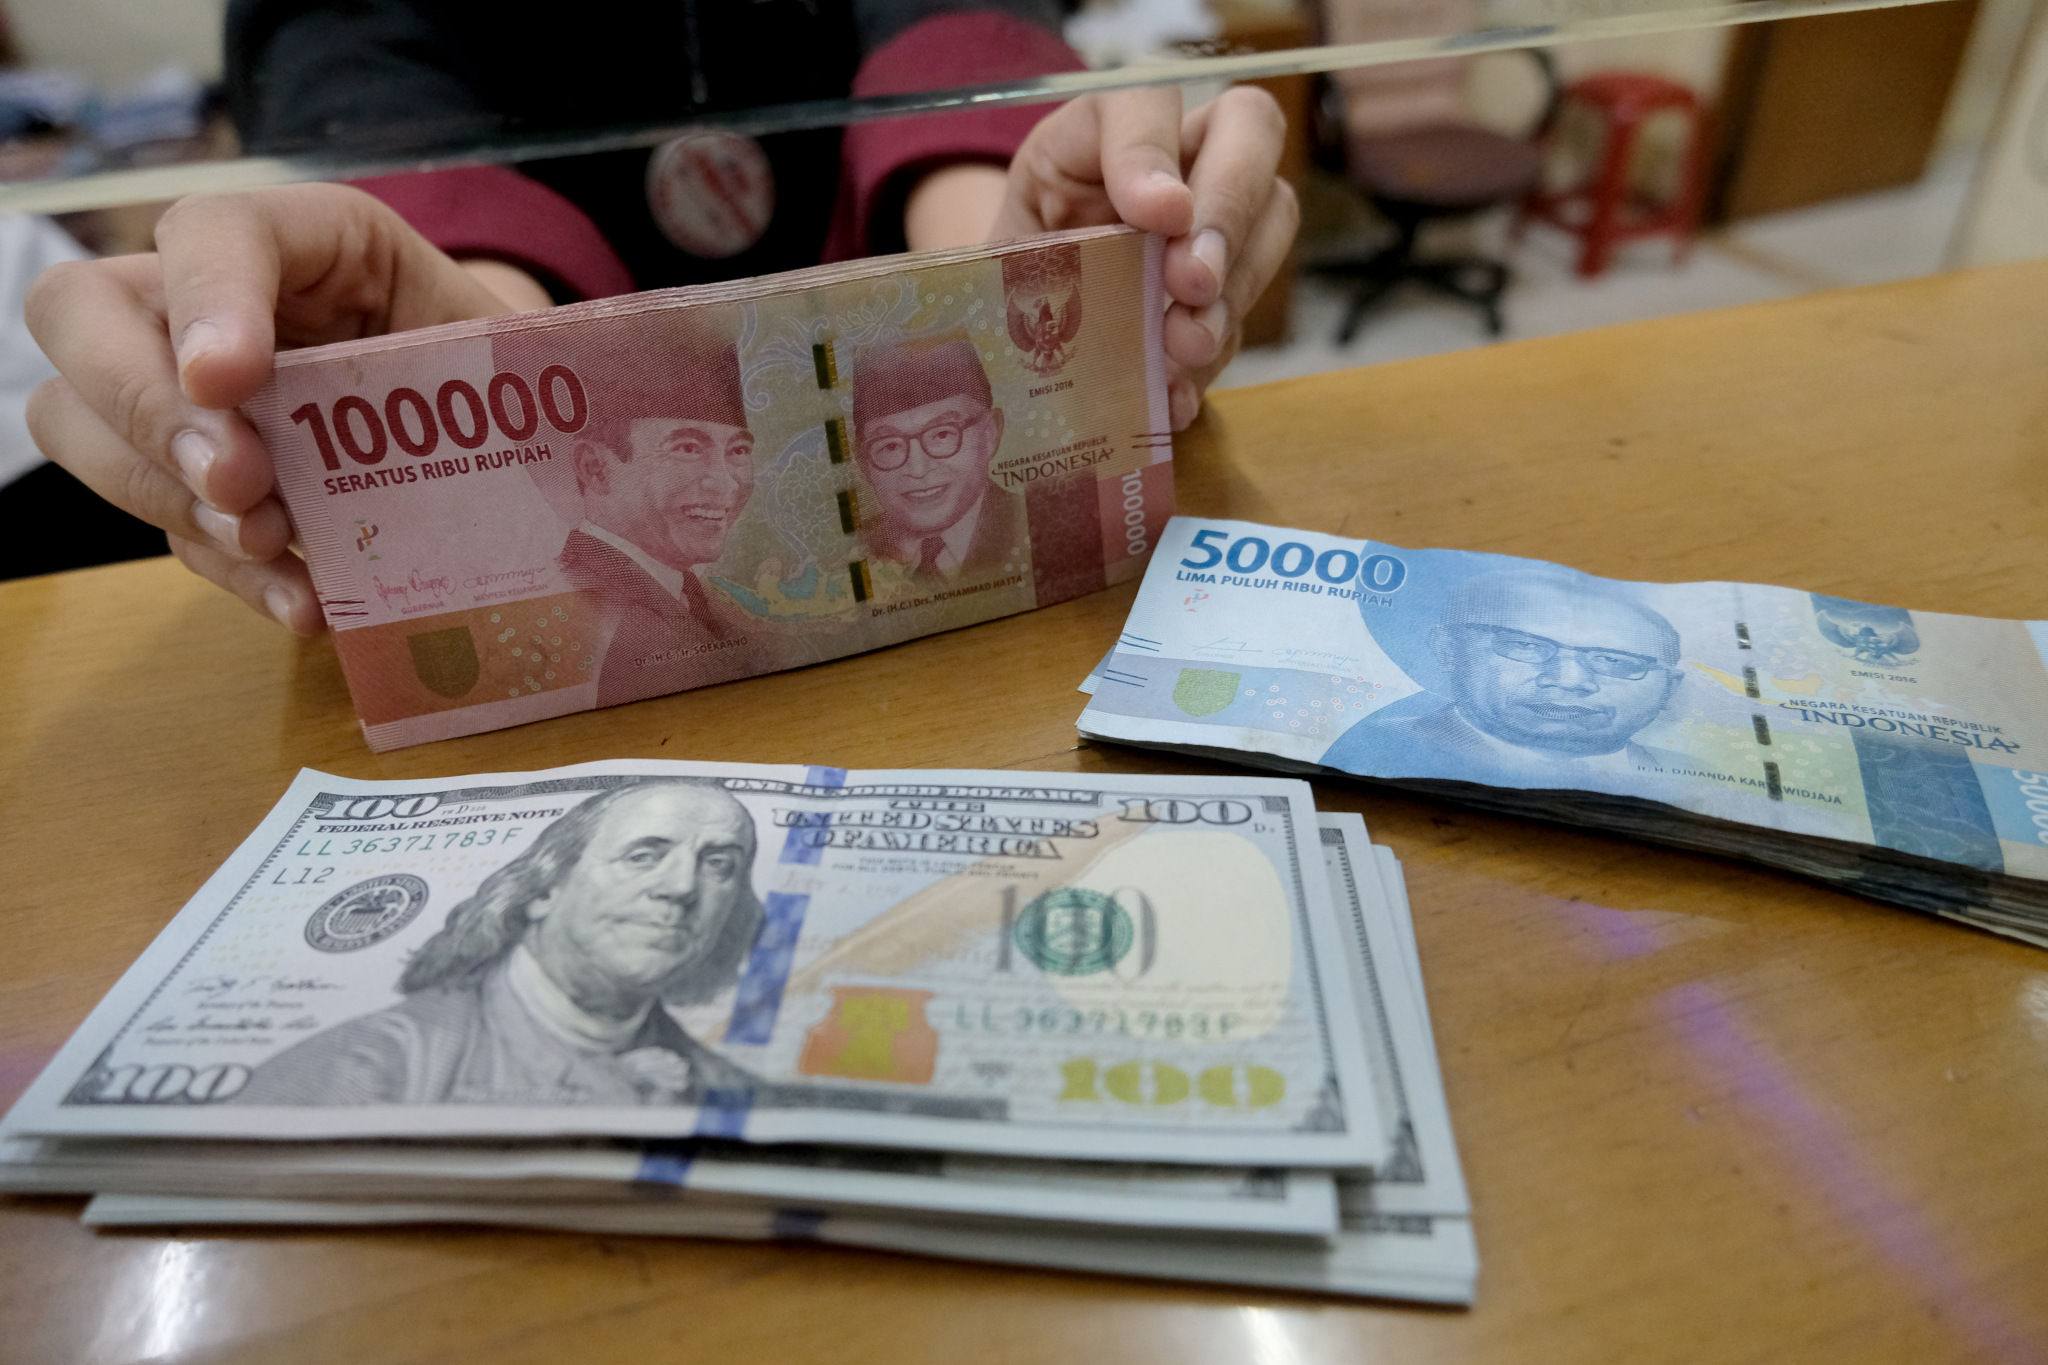 <p>Karyawan menghitung mata uang Rupiah di salah satu tempat penukaran uang atau Money Changer di kawasan Melawai, Jakarta, Senin, 9 November 2020. Foto: Ismail Pohan/TrenAsia</p>
